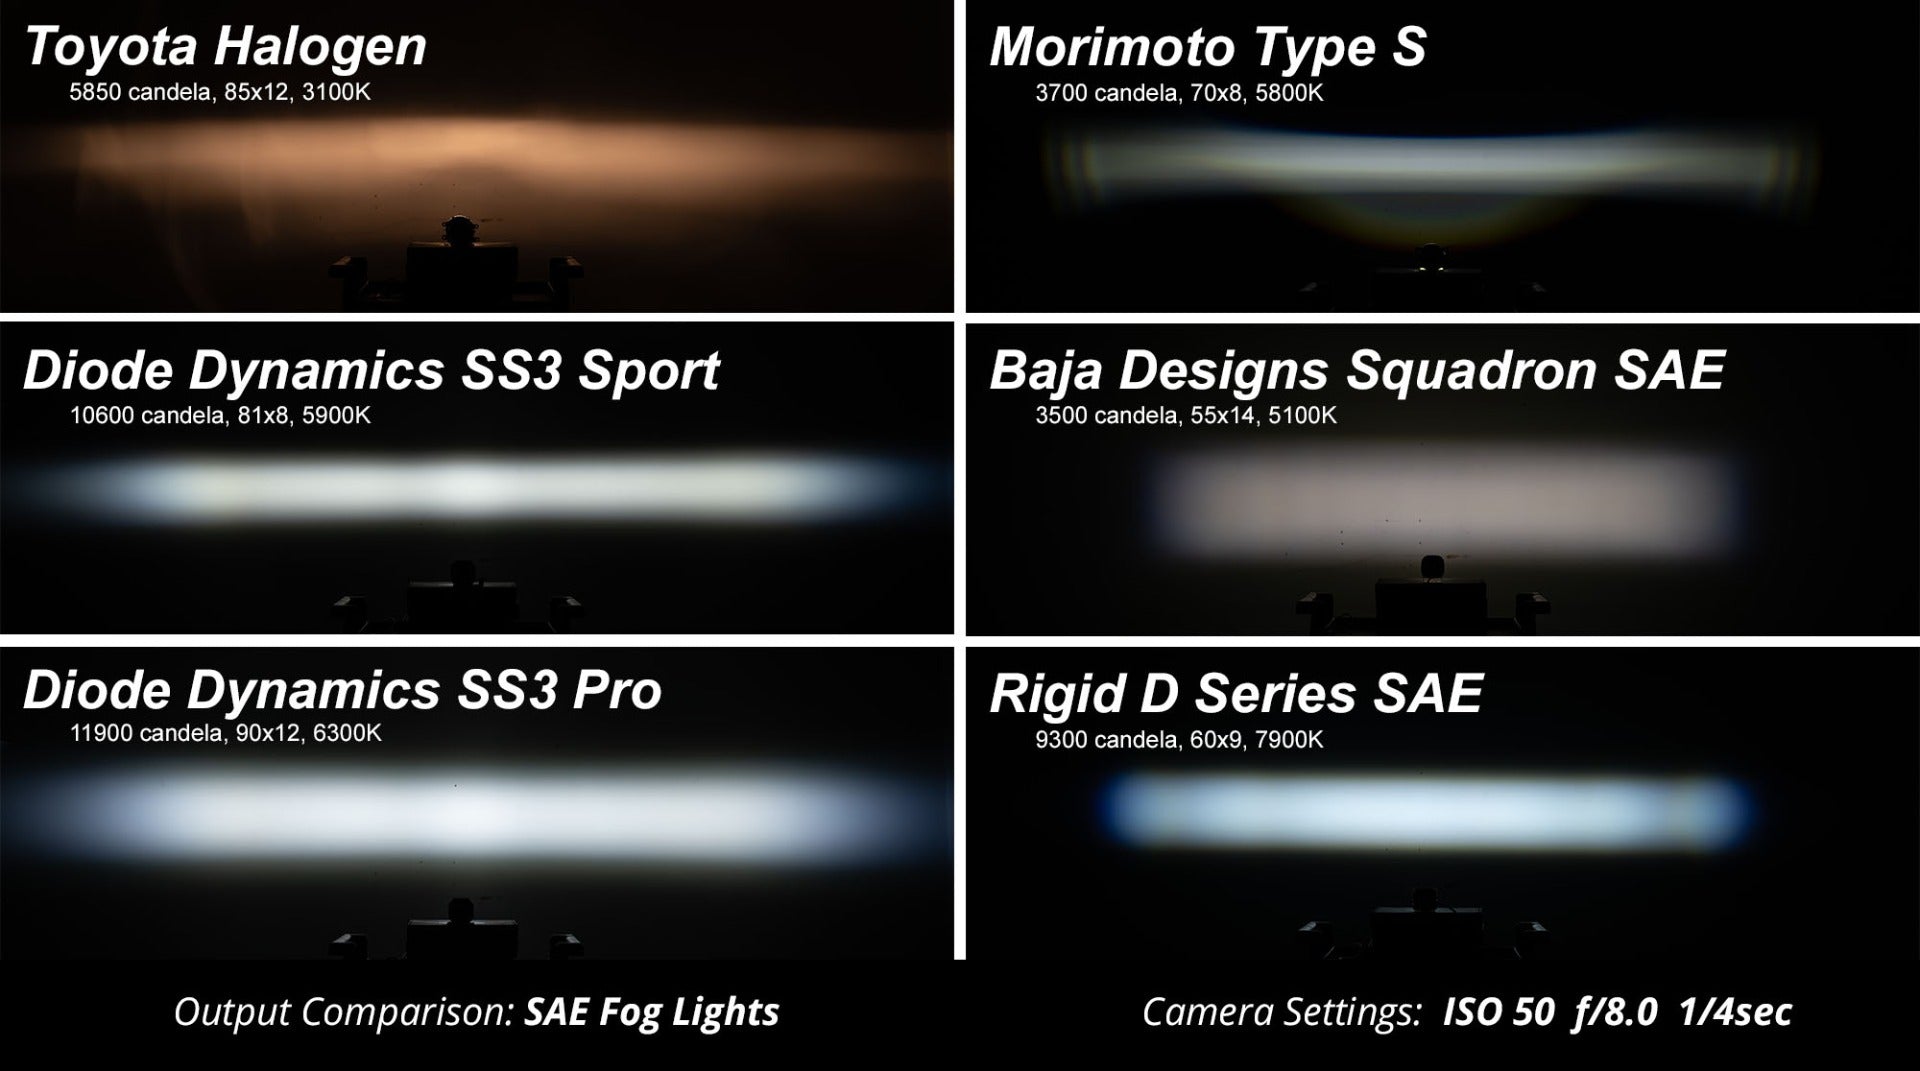 SS3 LED Fog Light Kit for 2007-2009 Ford Escape White SAE Fog Pro Diode Dynamics